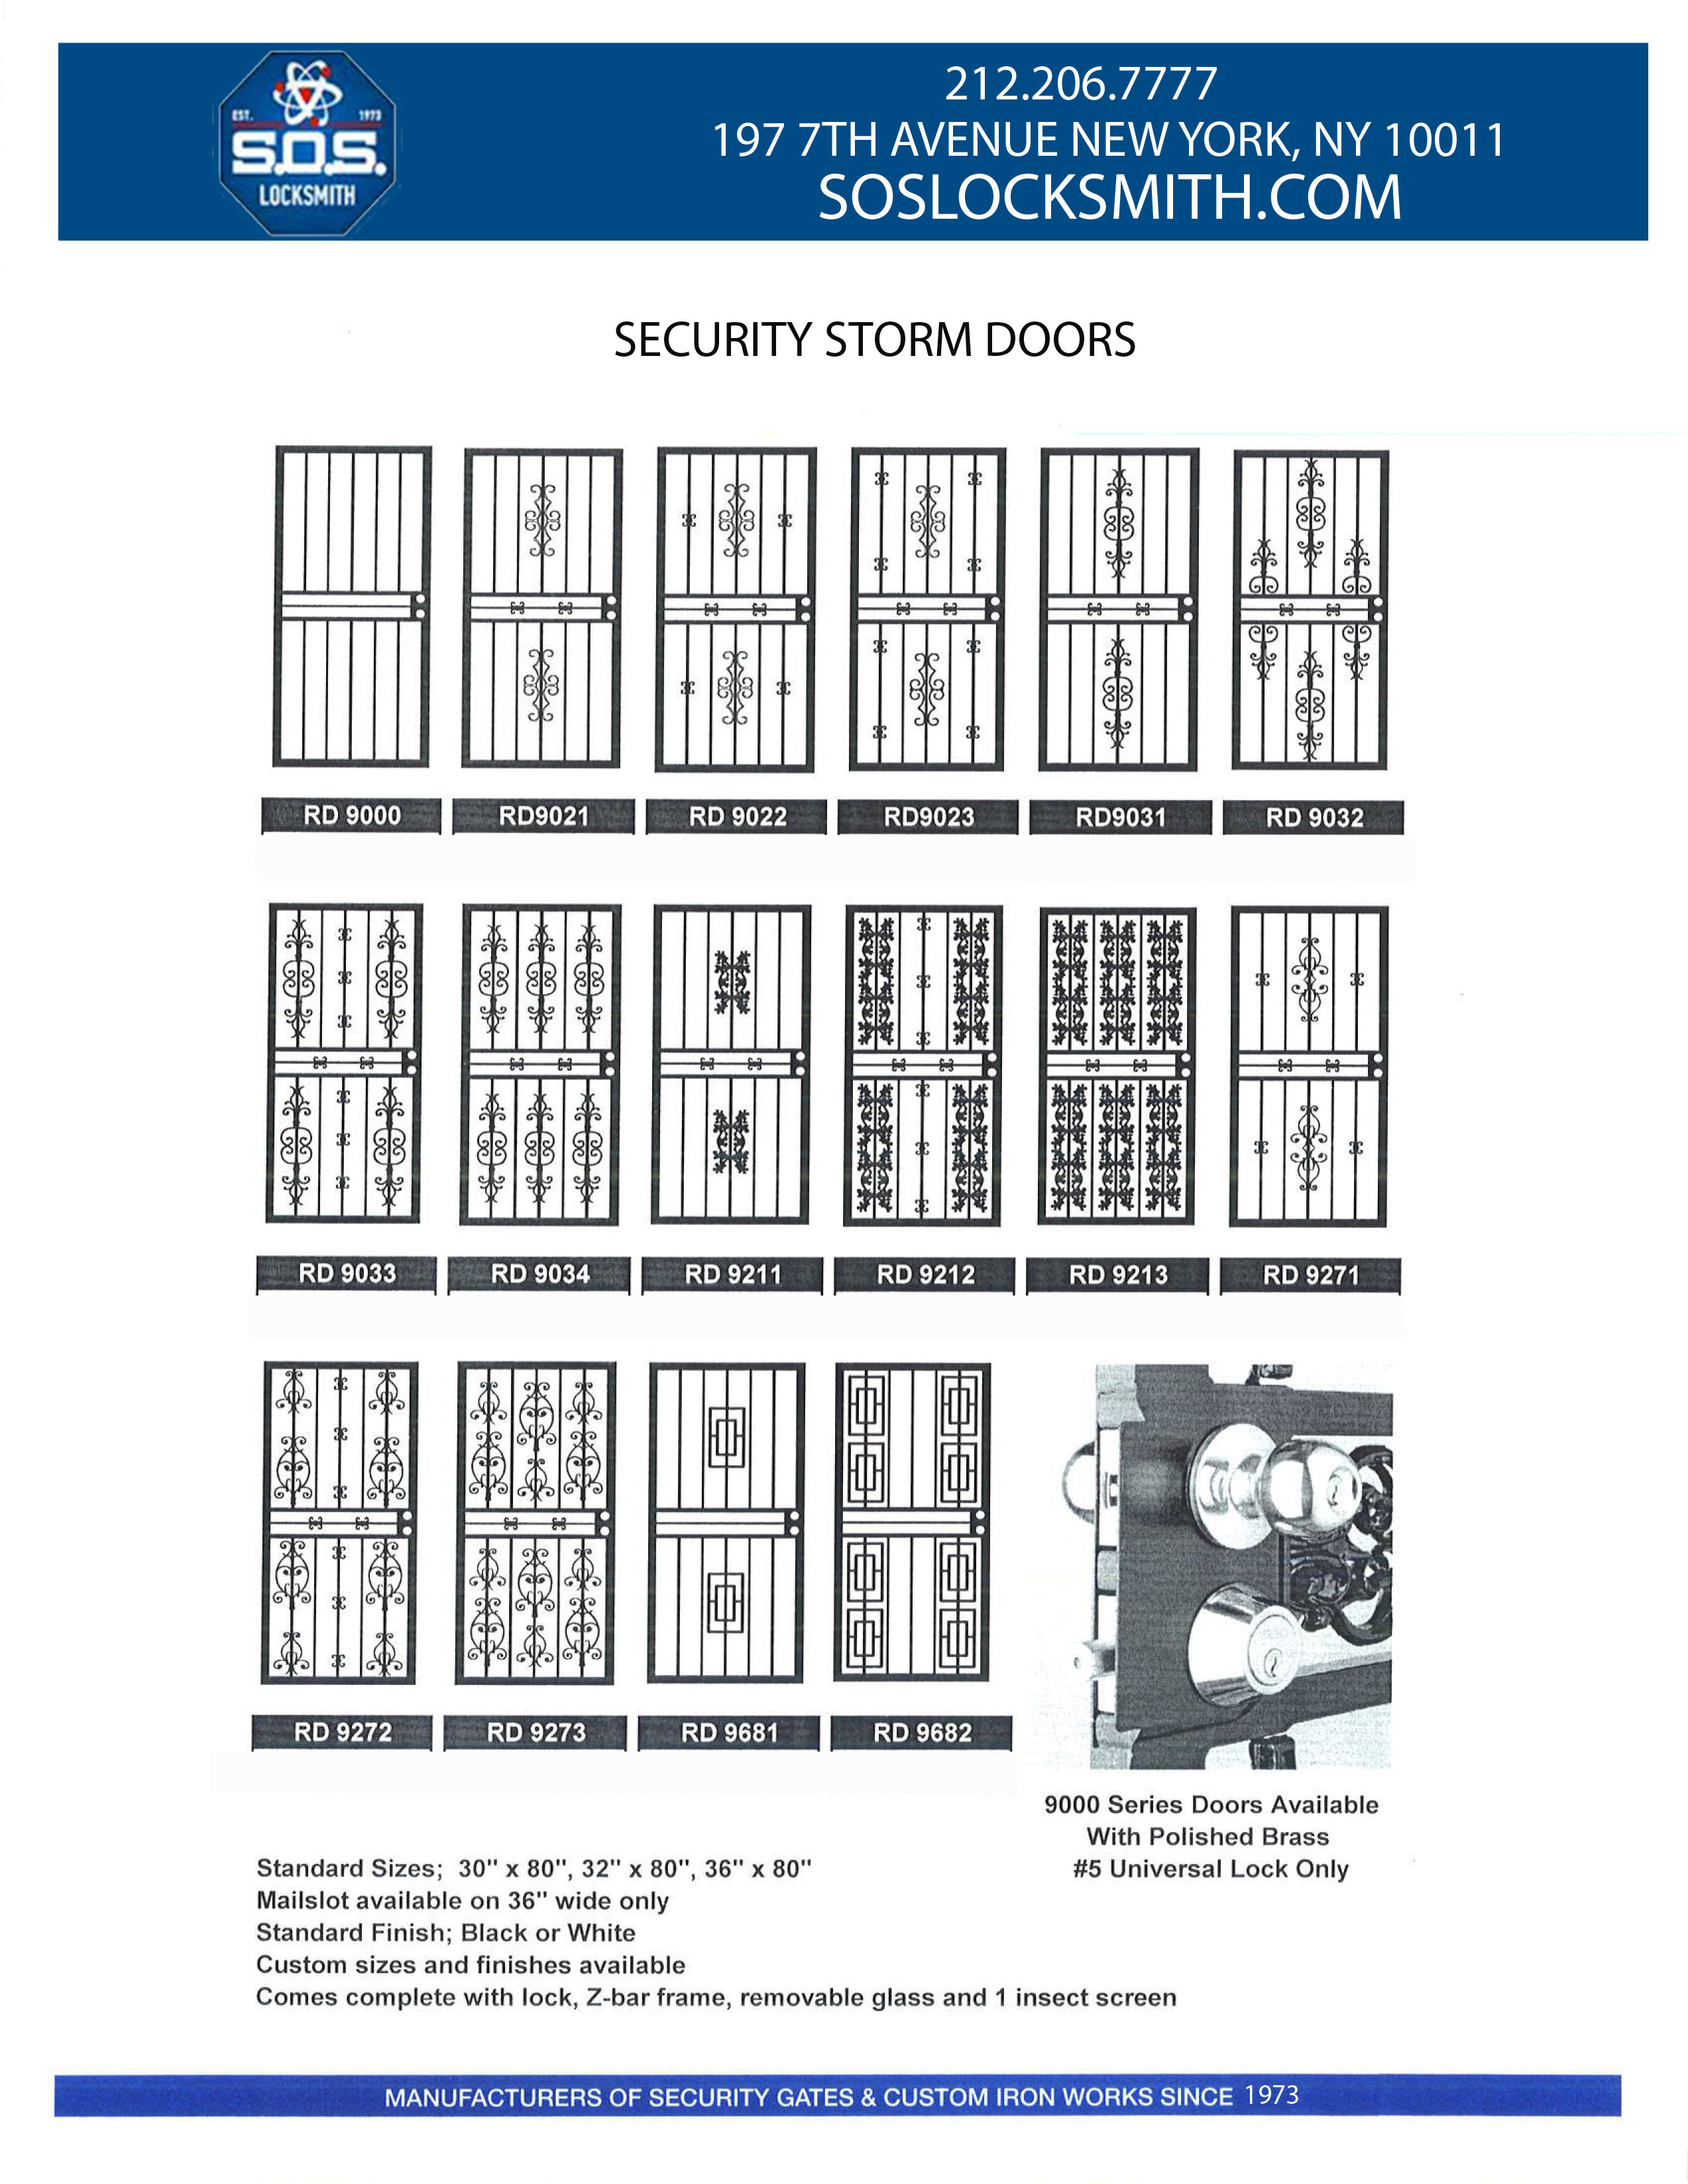 Storm door or Iron Work Doors NYC